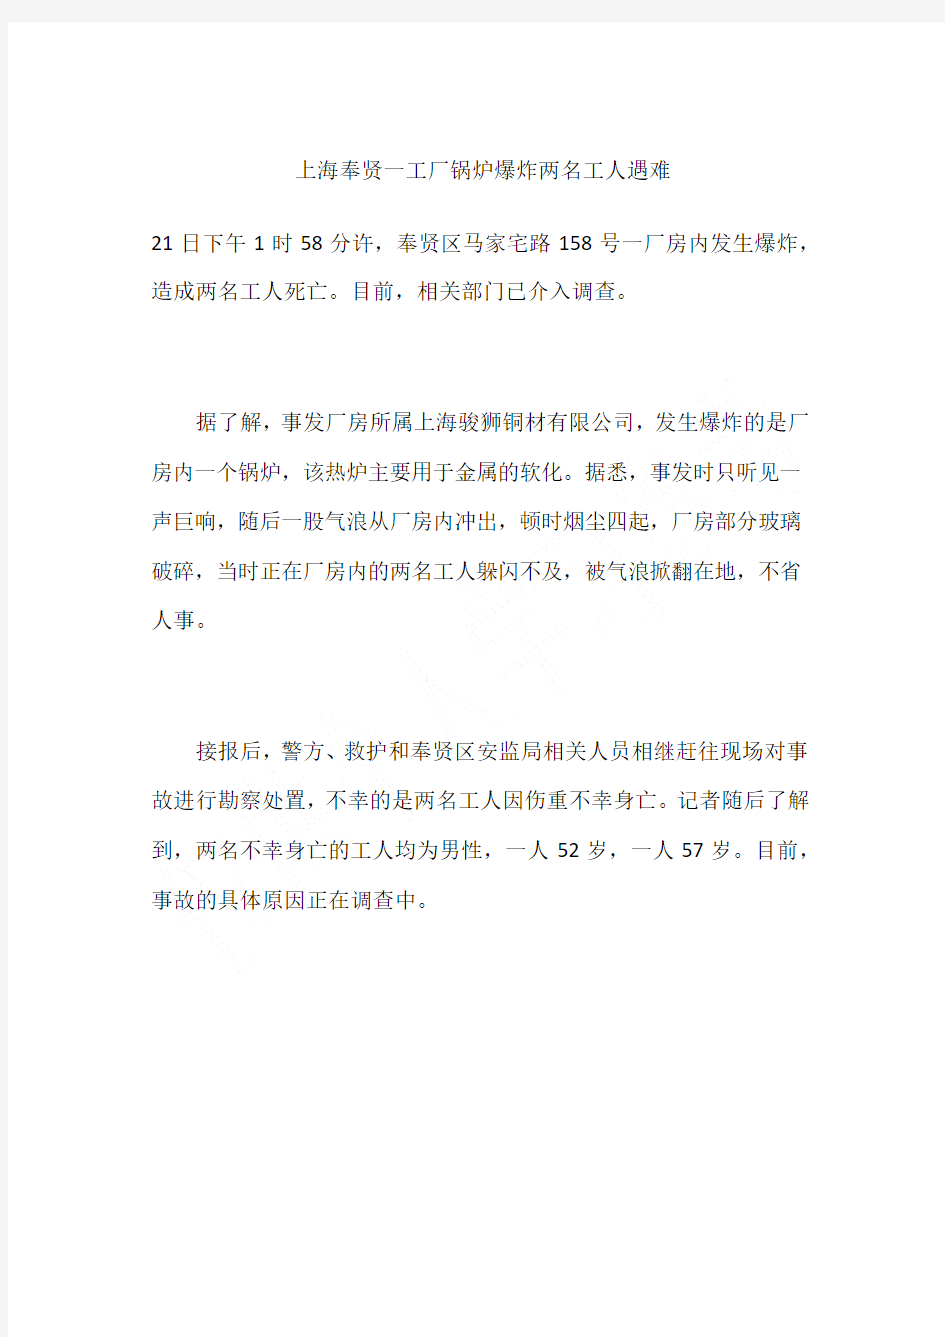 上海奉贤一工厂锅炉爆炸两名工人遇难